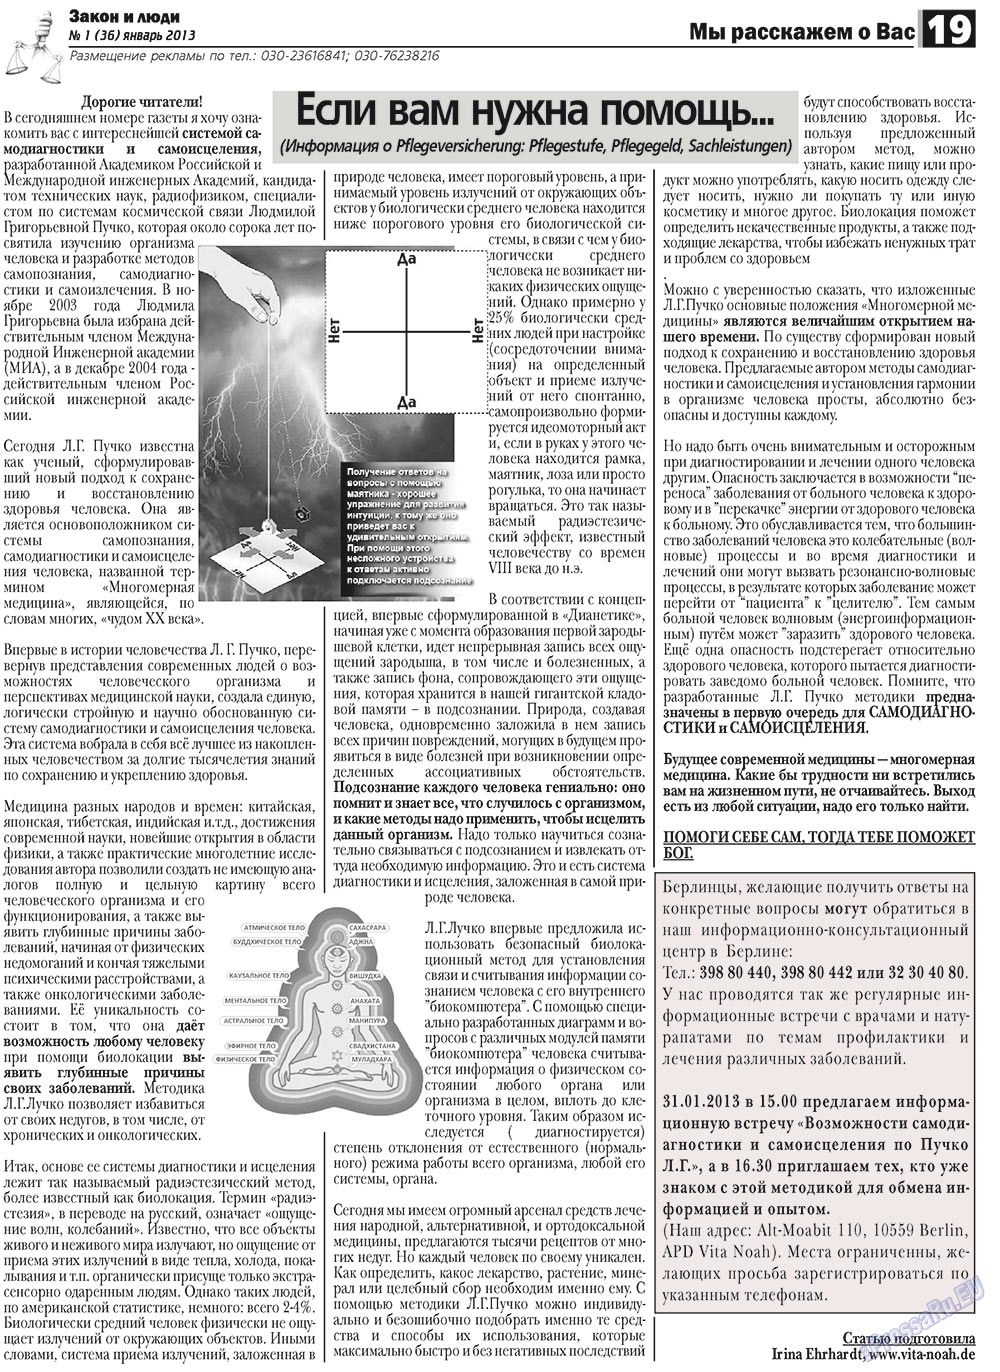 Закон и люди, газета. 2013 №1 стр.19